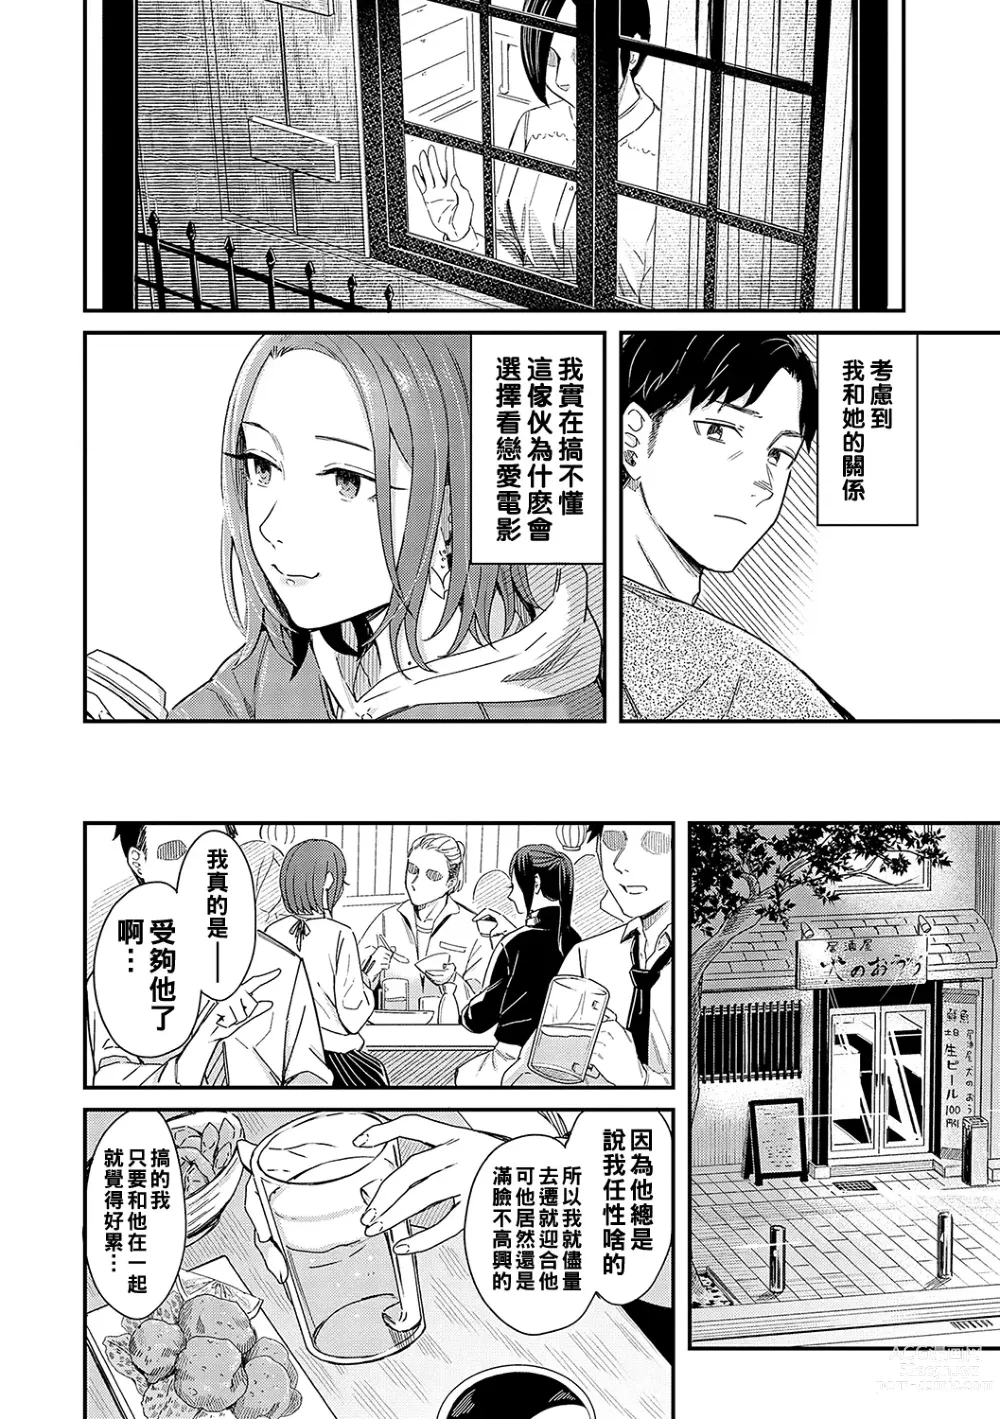 Page 2 of manga Kudaranai Renai Eiga no You ni... - Like a crappy romance movie...